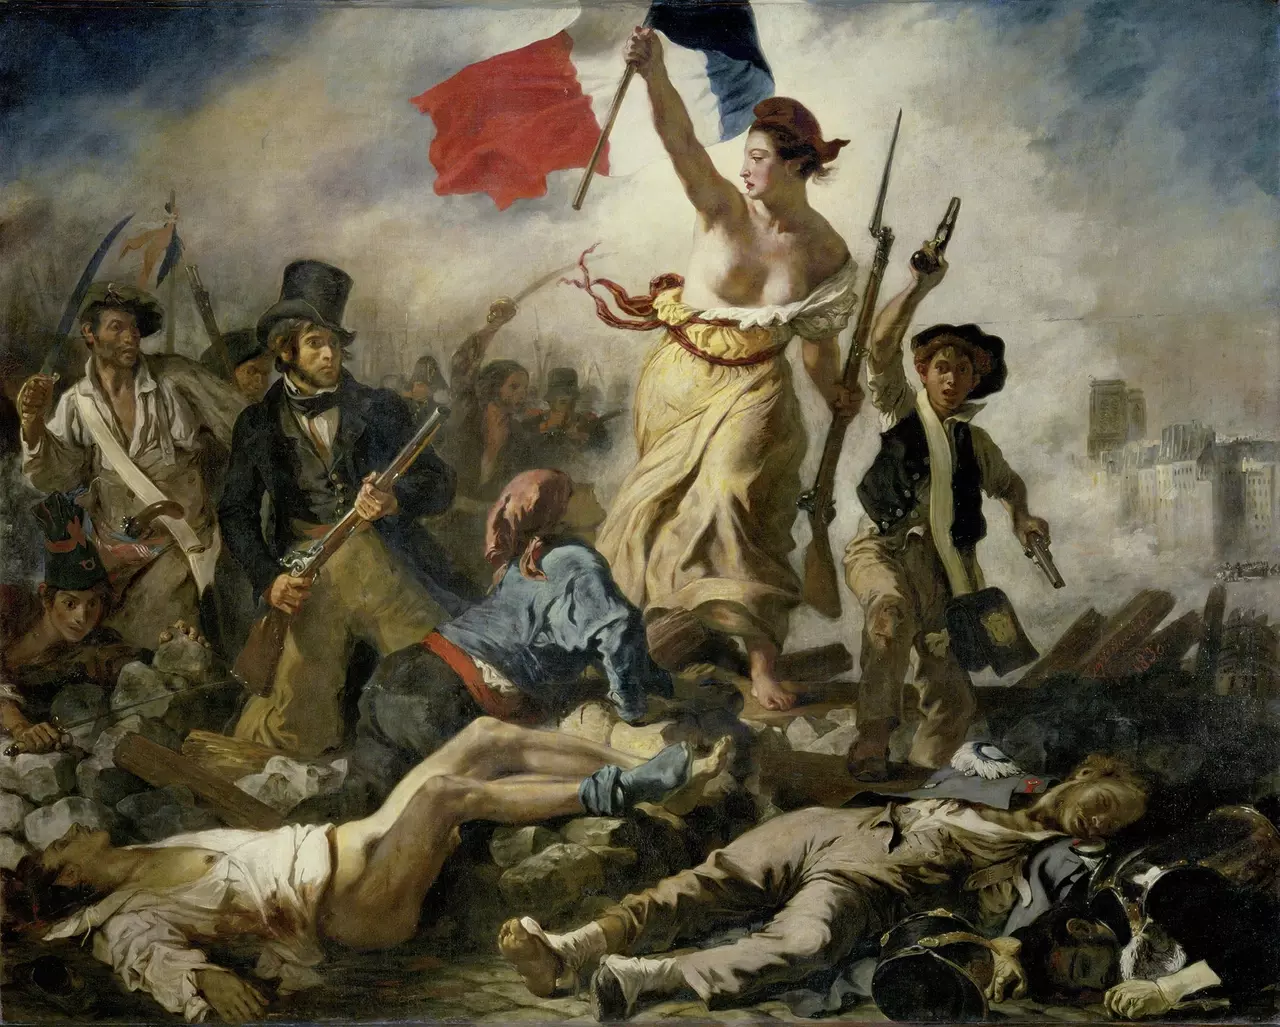 'La Liberté guidant le peuple' by Eugène Delacroix, 1830